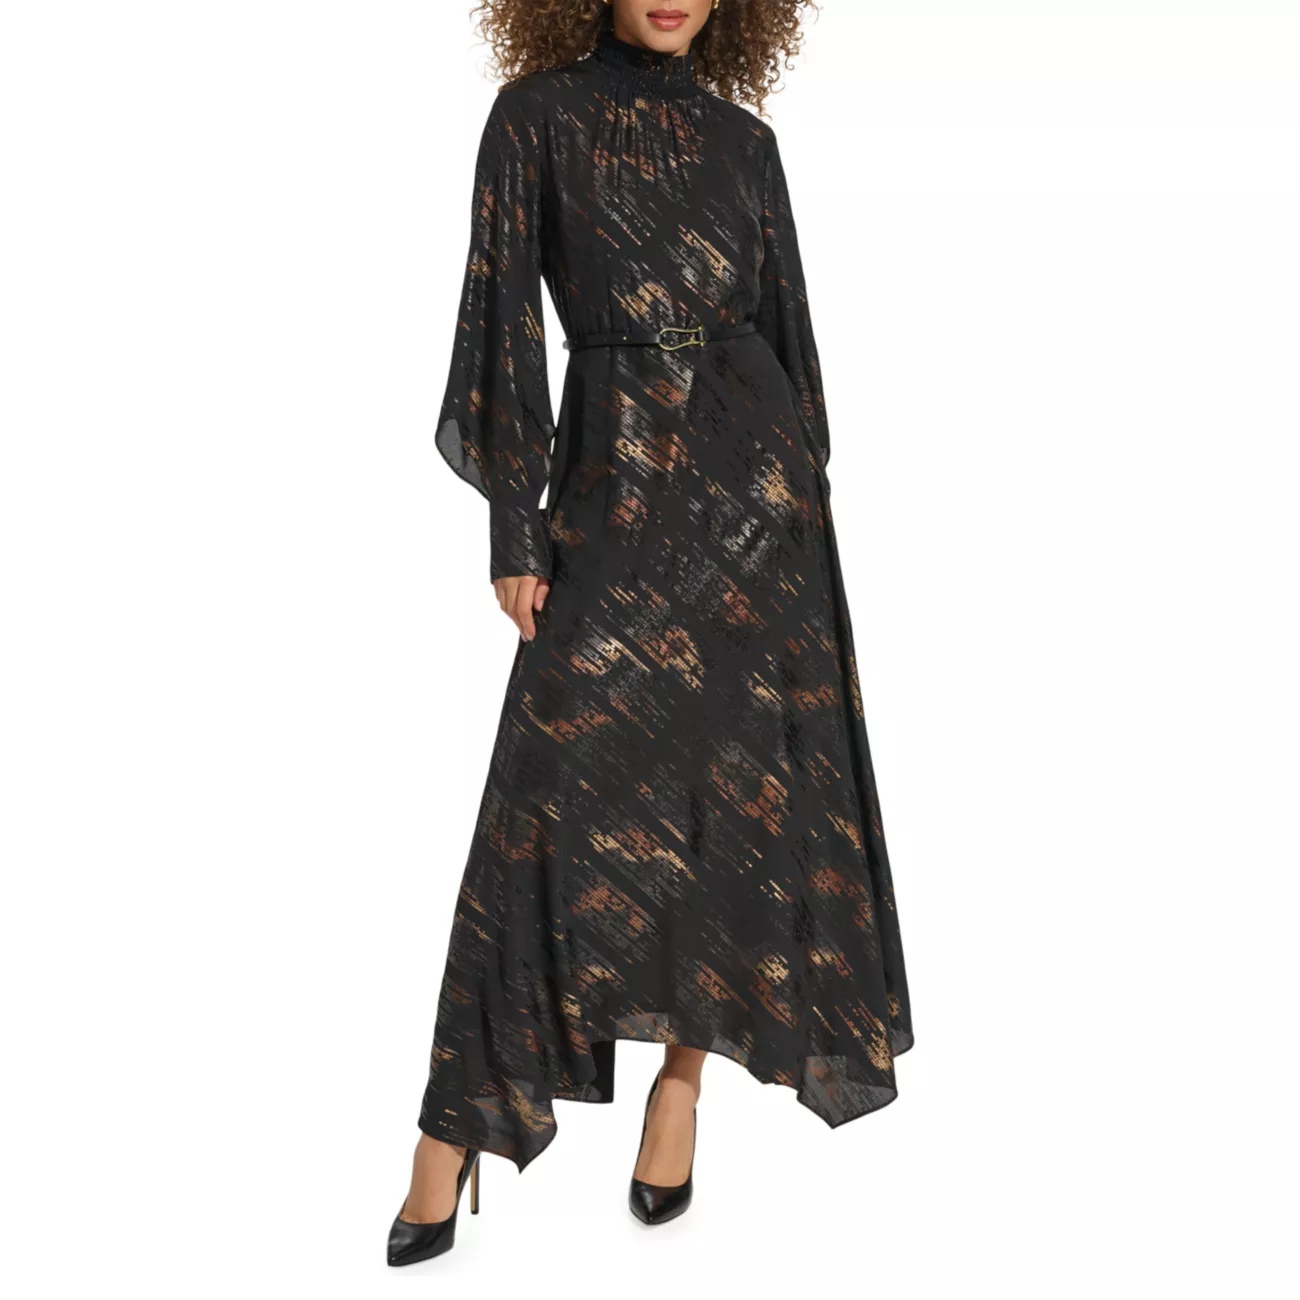 Платье с присборенным вырезом в стиле хэви-метал Donna Karan New York